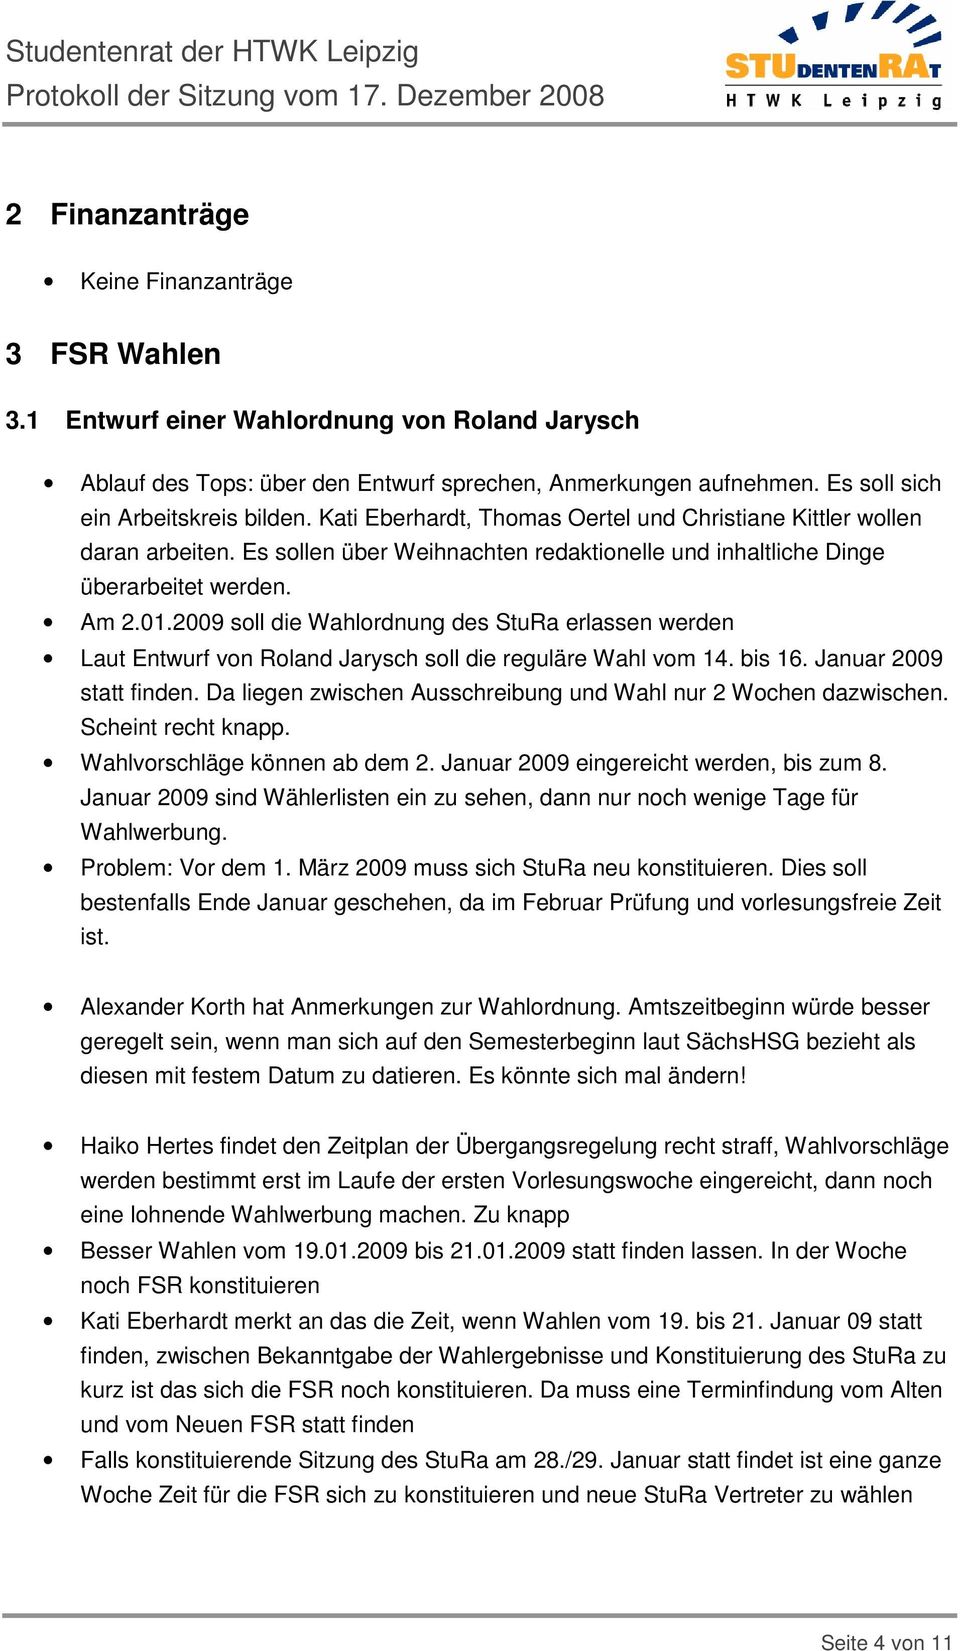 Am 2.01.2009 soll die Wahlordnung des StuRa erlassen werden Laut Entwurf von Roland Jarysch soll die reguläre Wahl vom 14. bis 16. Januar 2009 statt finden.